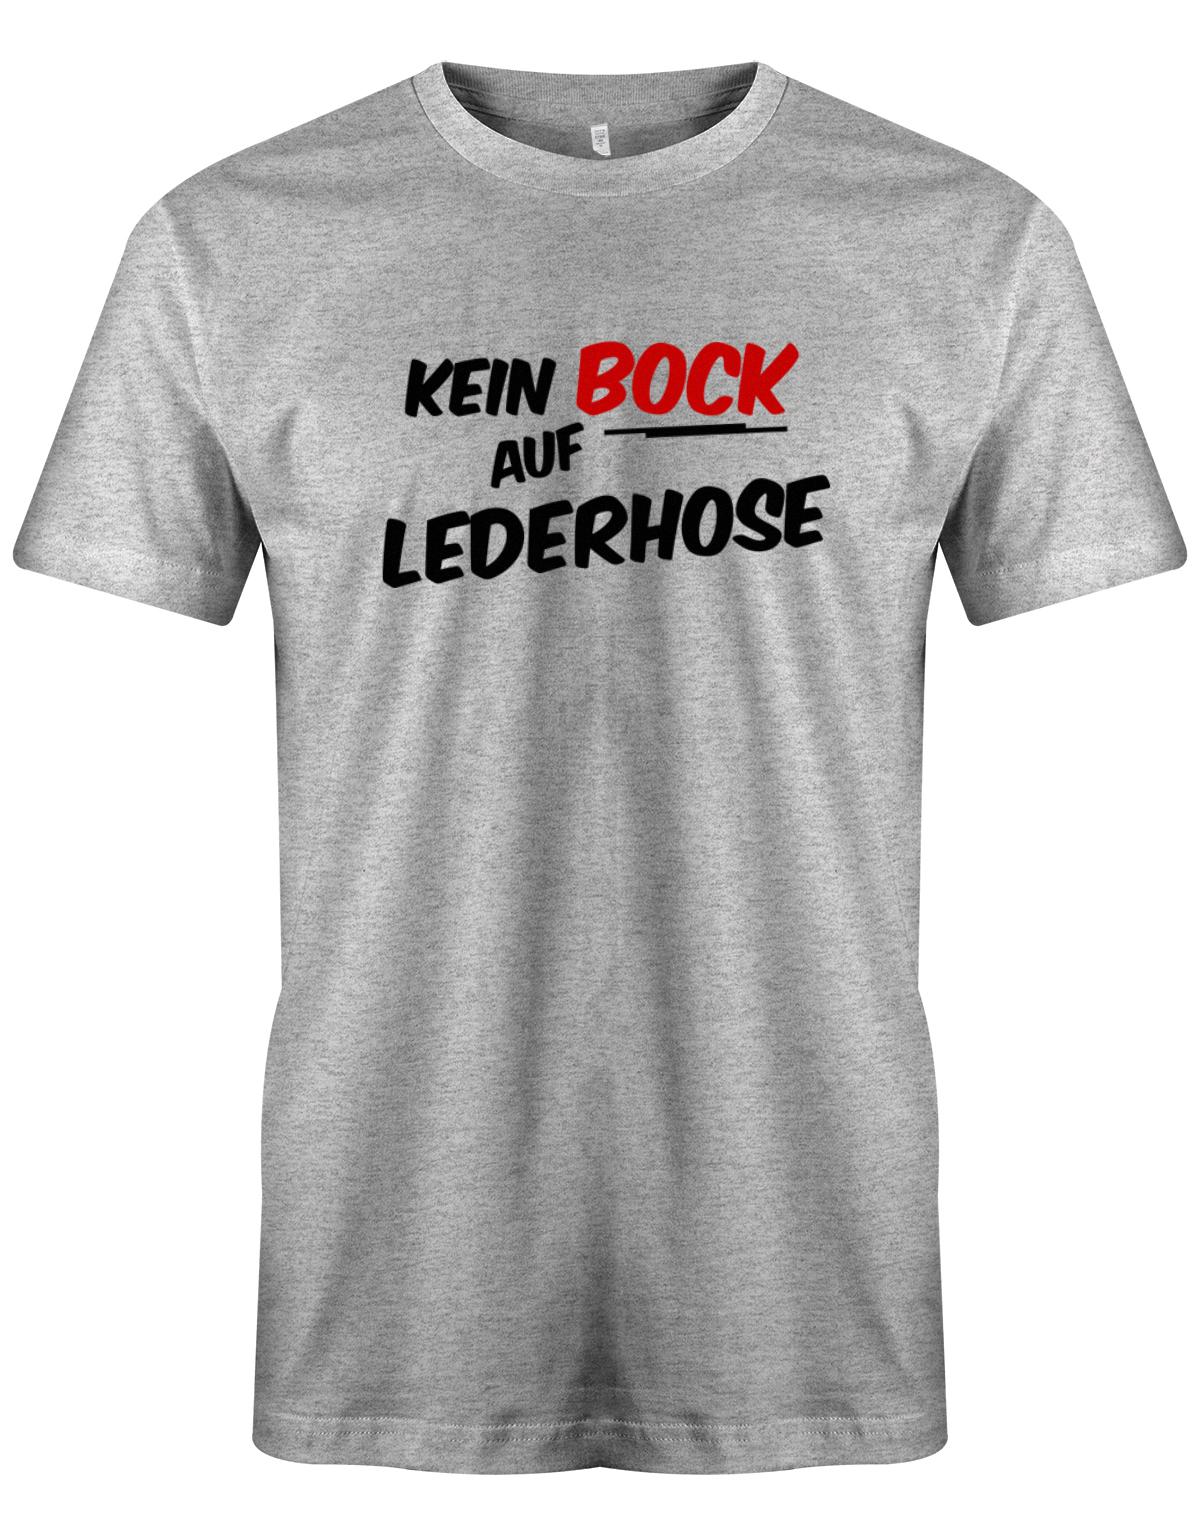 Kein-Bock-auf-lederhose-Herren-Shirt-Grau